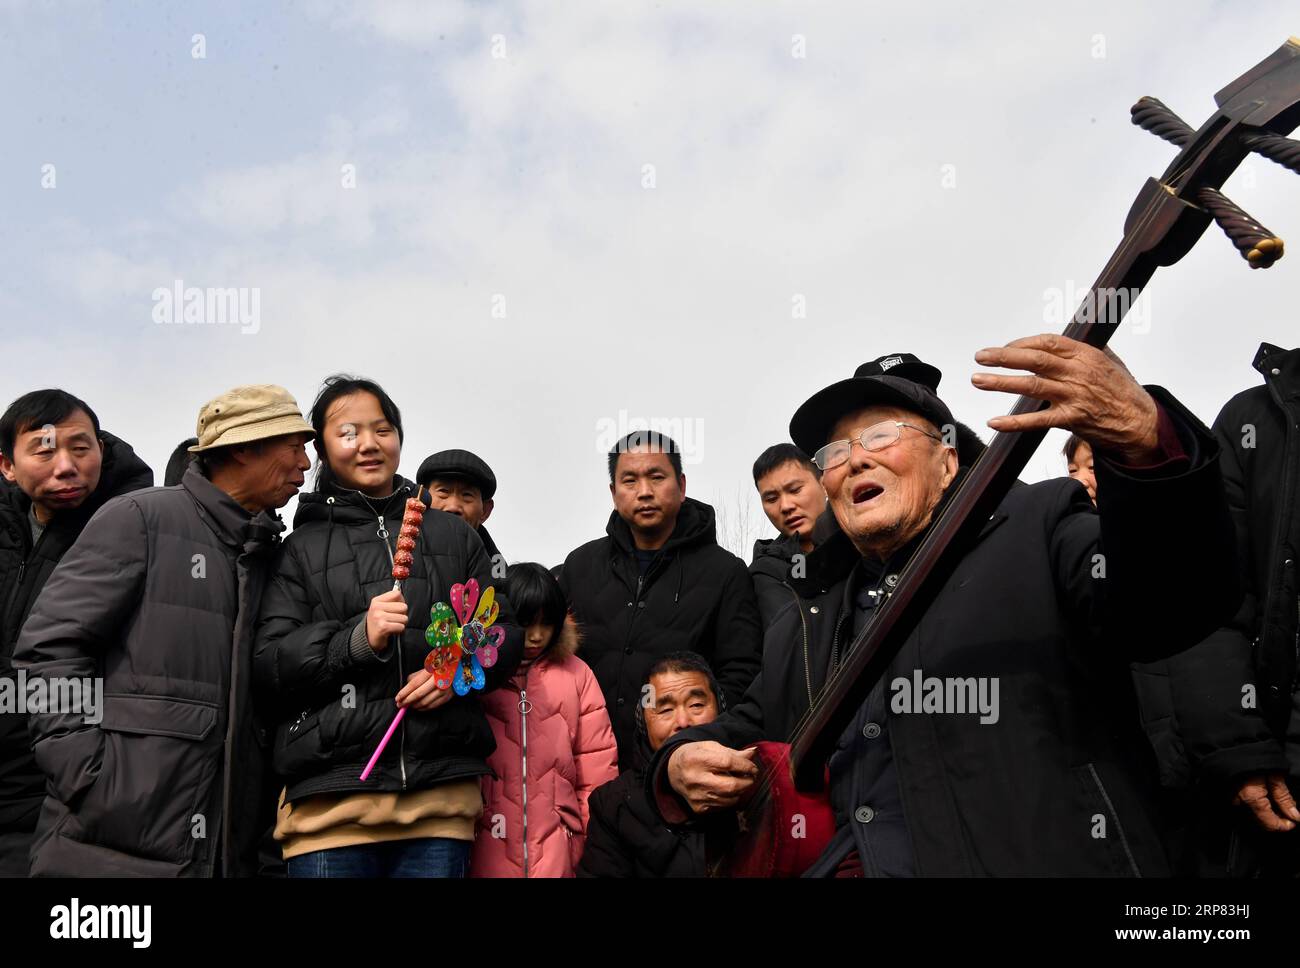 (190216) -- BAOFENG, 16. Februar 2019 (Xinhua) -- Volkskünstler Yu Shuxi (1. R), 99, tritt während der Majie Quyi-Messe im Baofeng County, Provinz Henan in Zentralchina, am 16. Februar 2019 auf. Jedes Jahr nach dem Frühlingsfest wird das Dorf Majie in der zentralchinesischen Provinz Henan von Volkskünstlern aus dem ganzen Land besucht. Die Volkskunstmesse dort hat 700 Jahre gedauert. Die Veranstaltung soll von einem angesehenen Volkskünstler im Dorf stammen, dessen viele Schüler sich versammelten, um 1316 seinen Geburtstag zu feiern. Die Geburtstagsfeier entwickelte sich später zu einer Volkskunstmesse. Chinesische Volkskunst, oder Quyi, hat einen Menschen Stockfoto